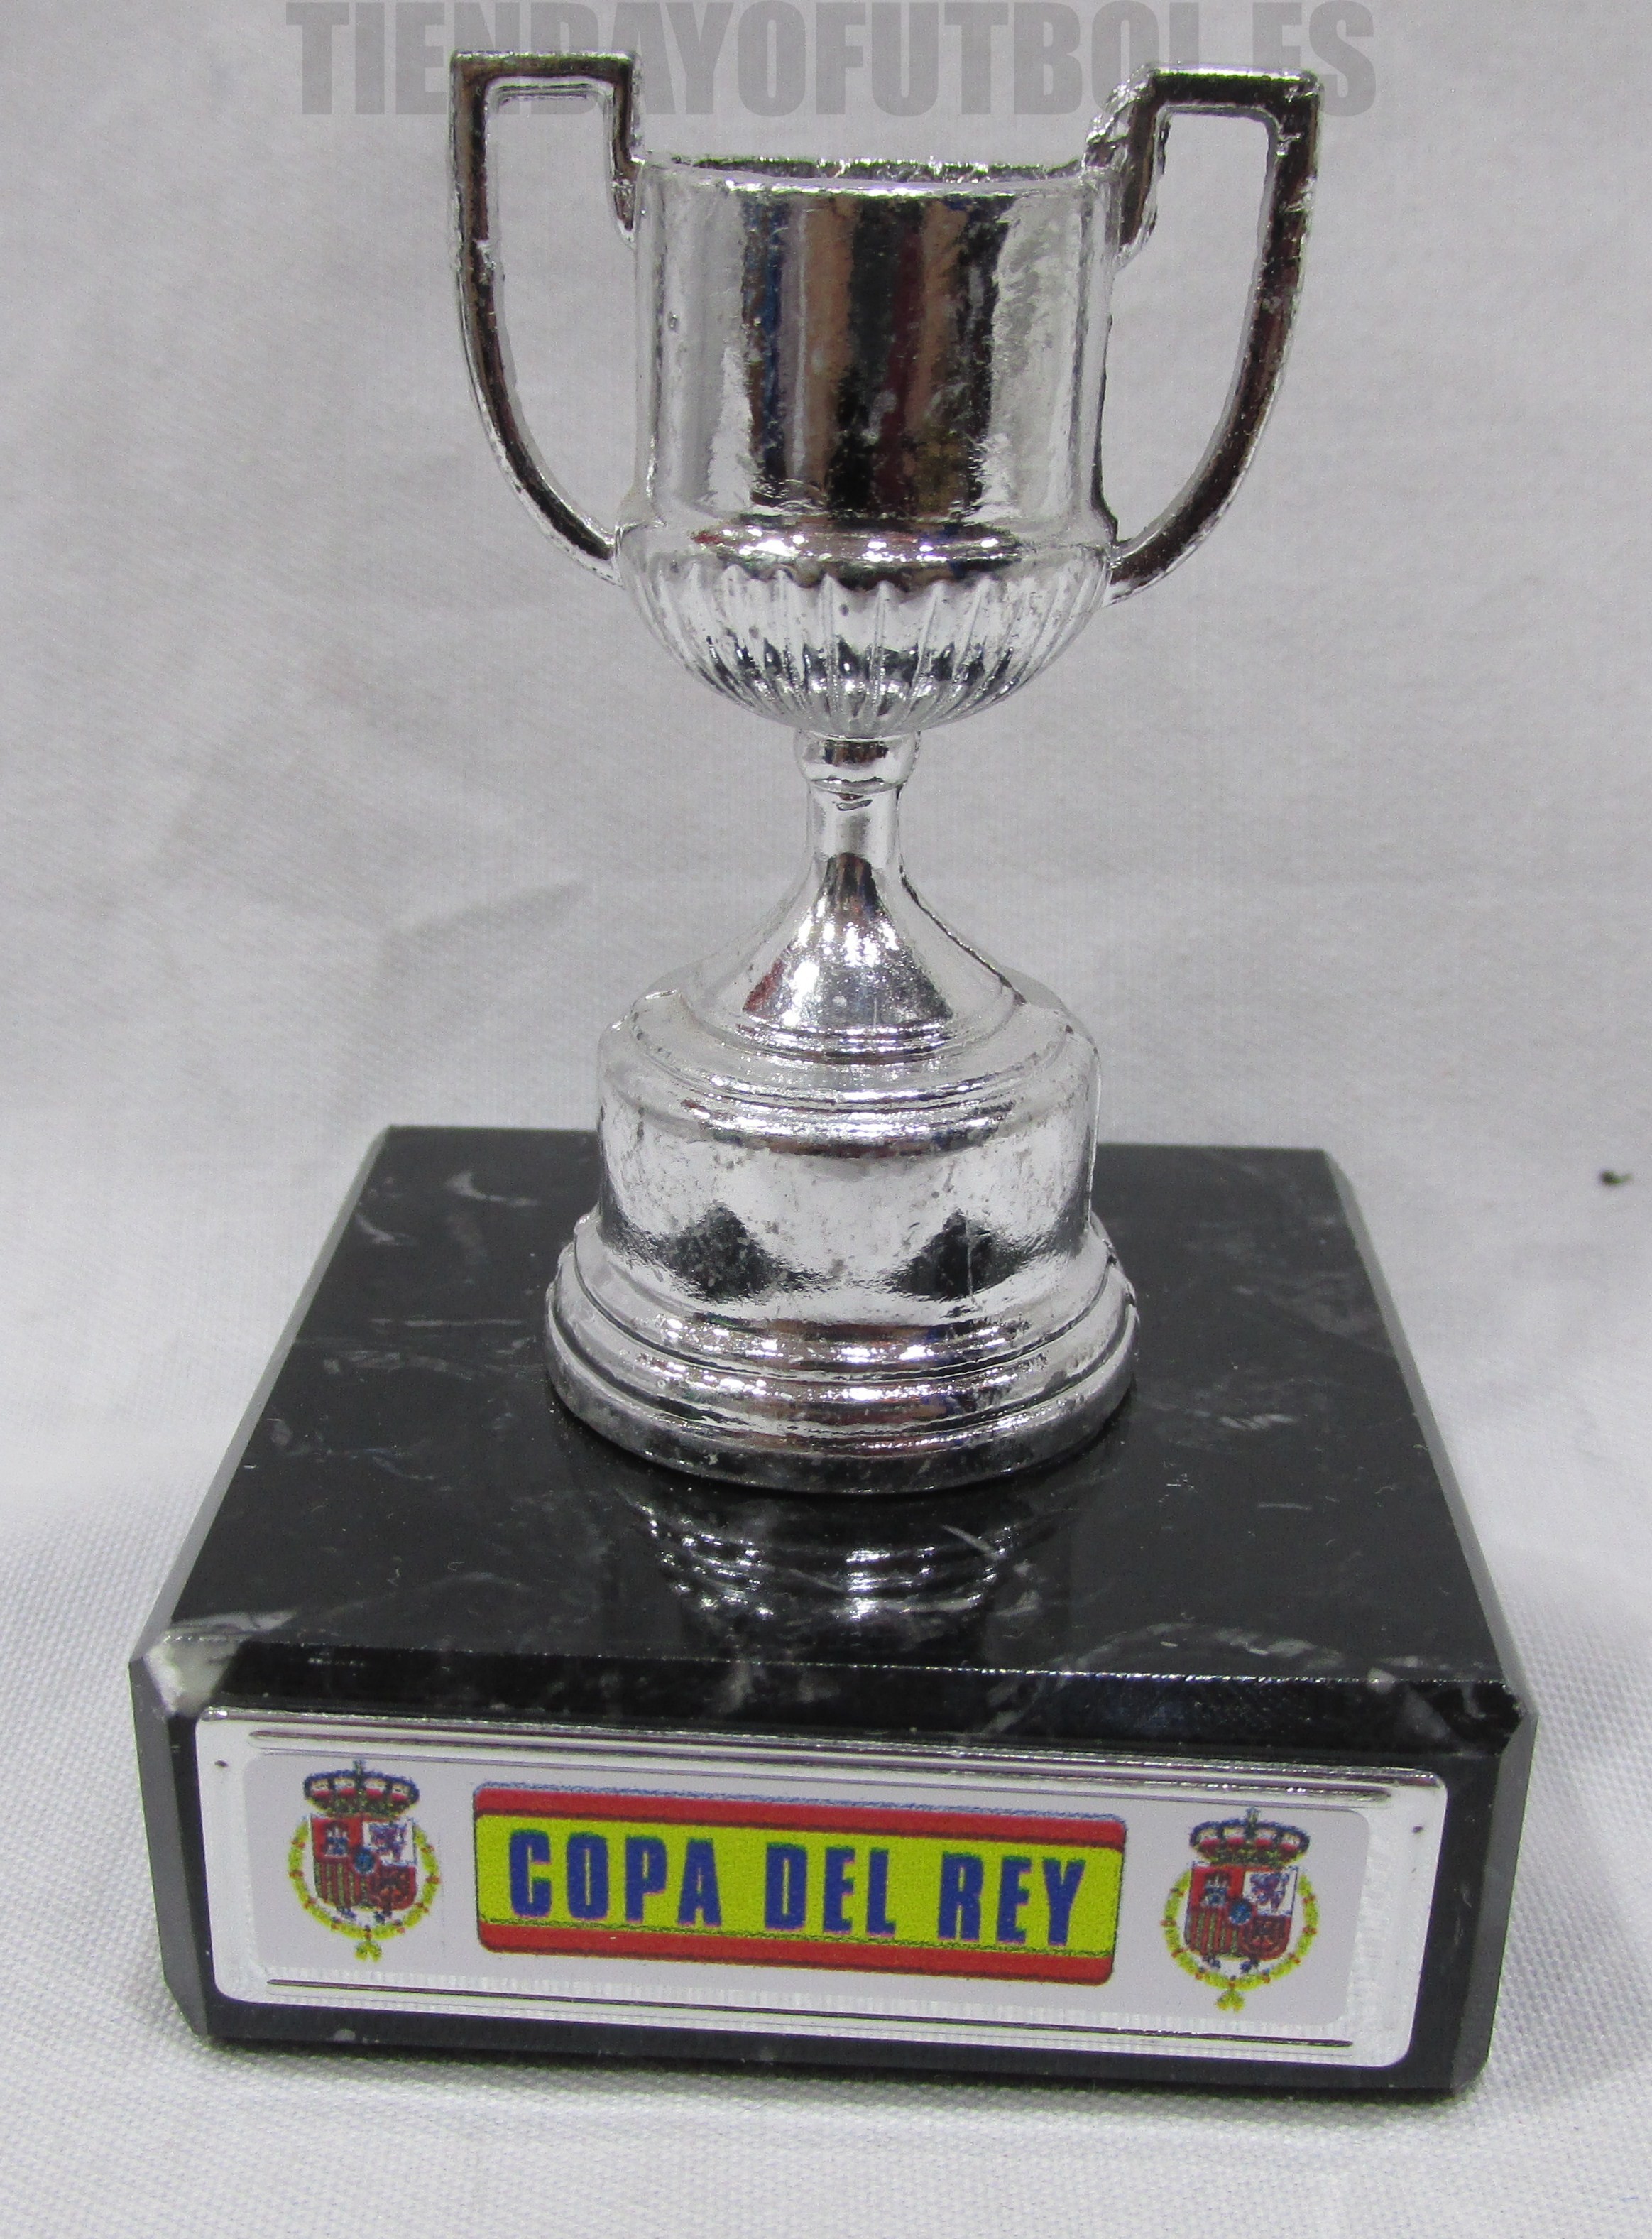 Replica del Copa del Rey|Copa del Rey|Trofeo de Copa|Liga Española Trofeo|Trofeos Madrid